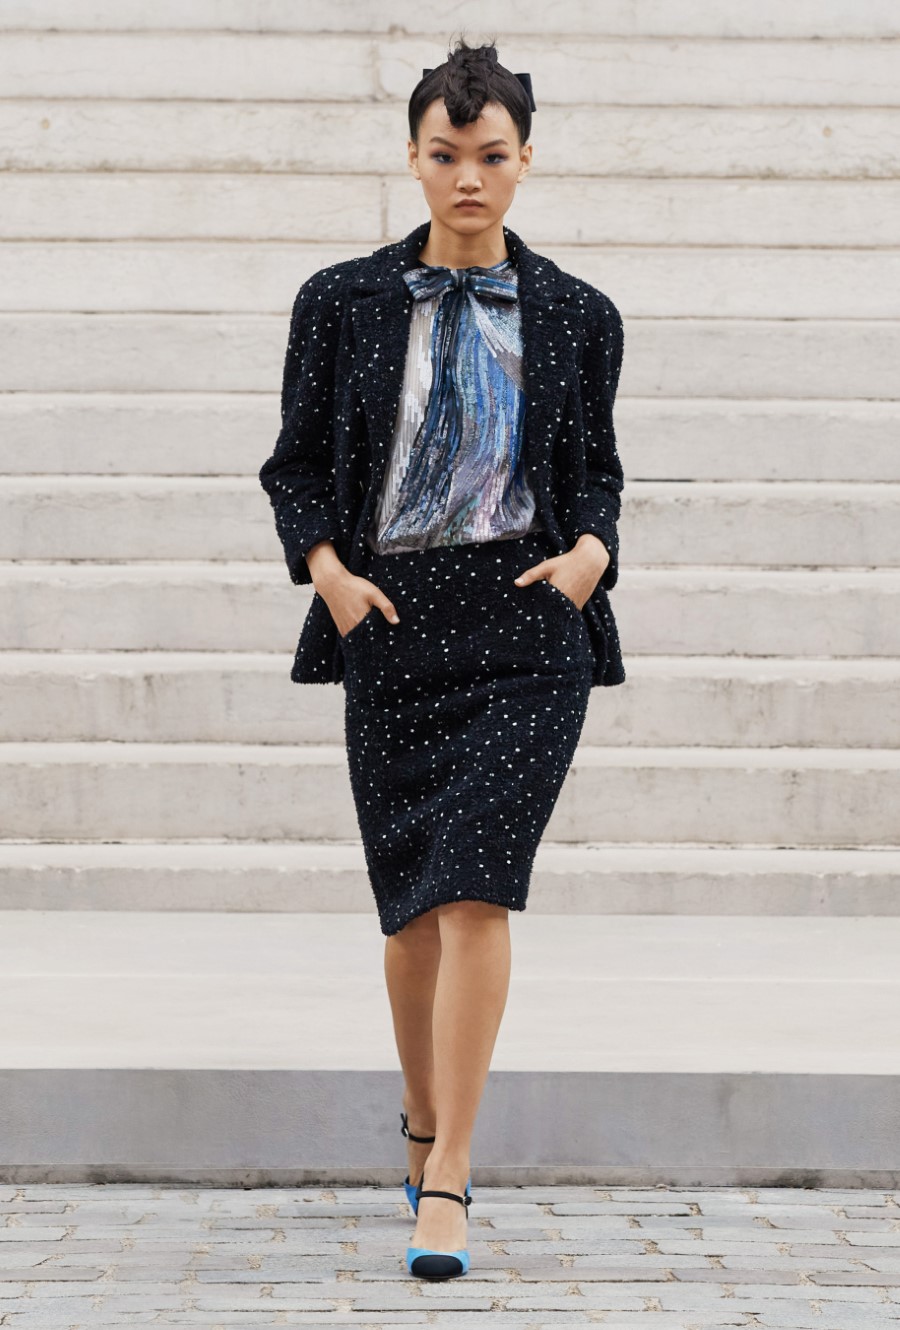 Chanel Haute Couture Fall Winter 2021